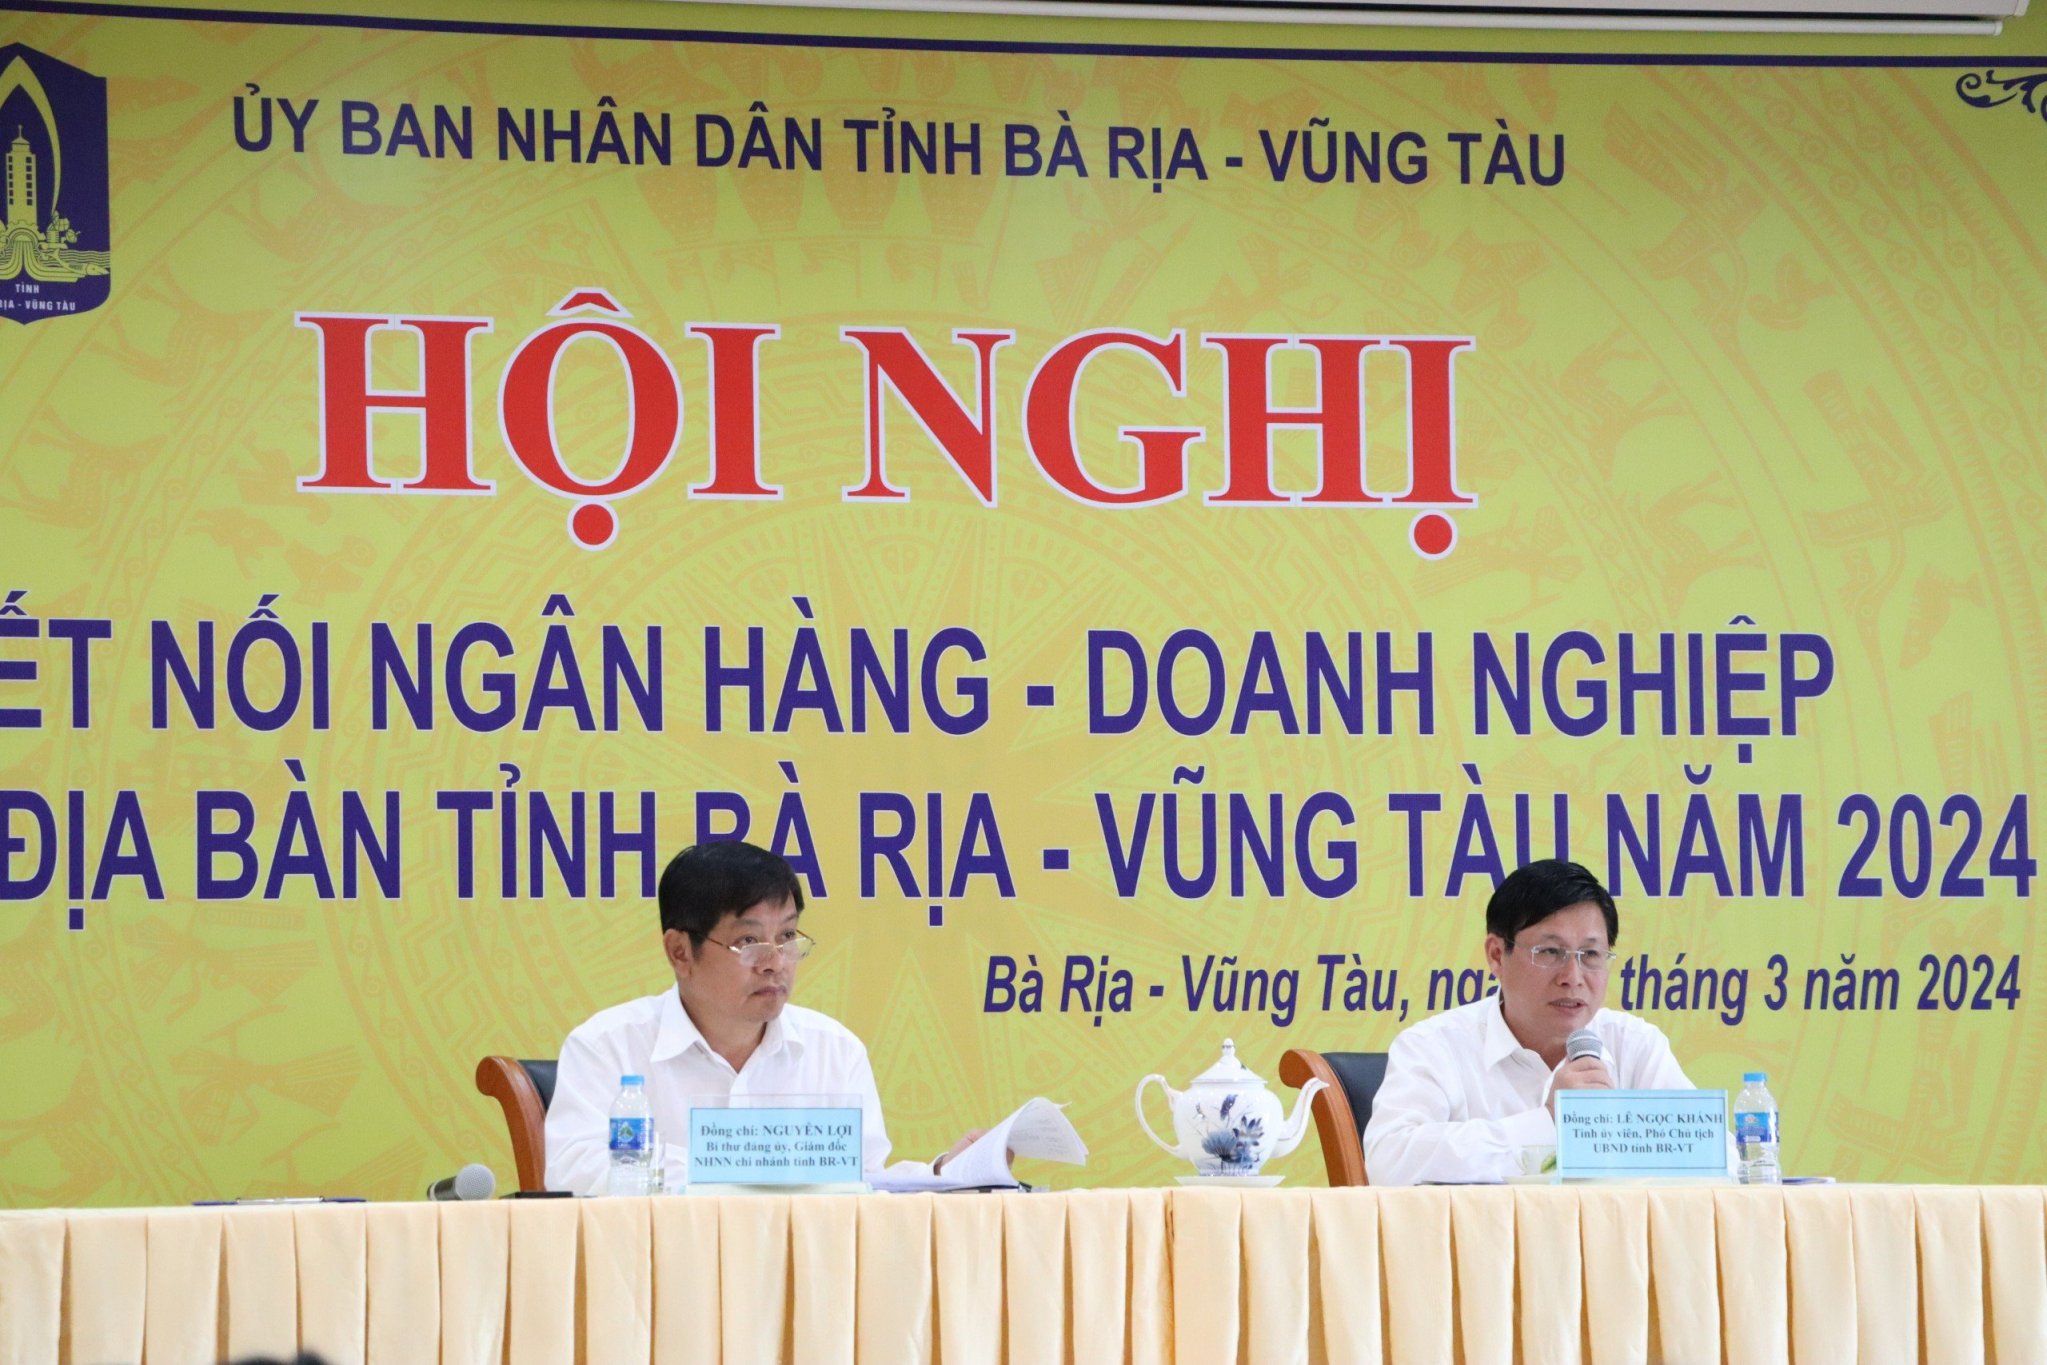 Ông Lê Ngọc Khánh, Phó Chủ tịch UBND tỉnh và ông Nguyễn Lợi, Giám đốc NHNN - Chi nhánh tỉnh đồng chủ trì hội nghị.